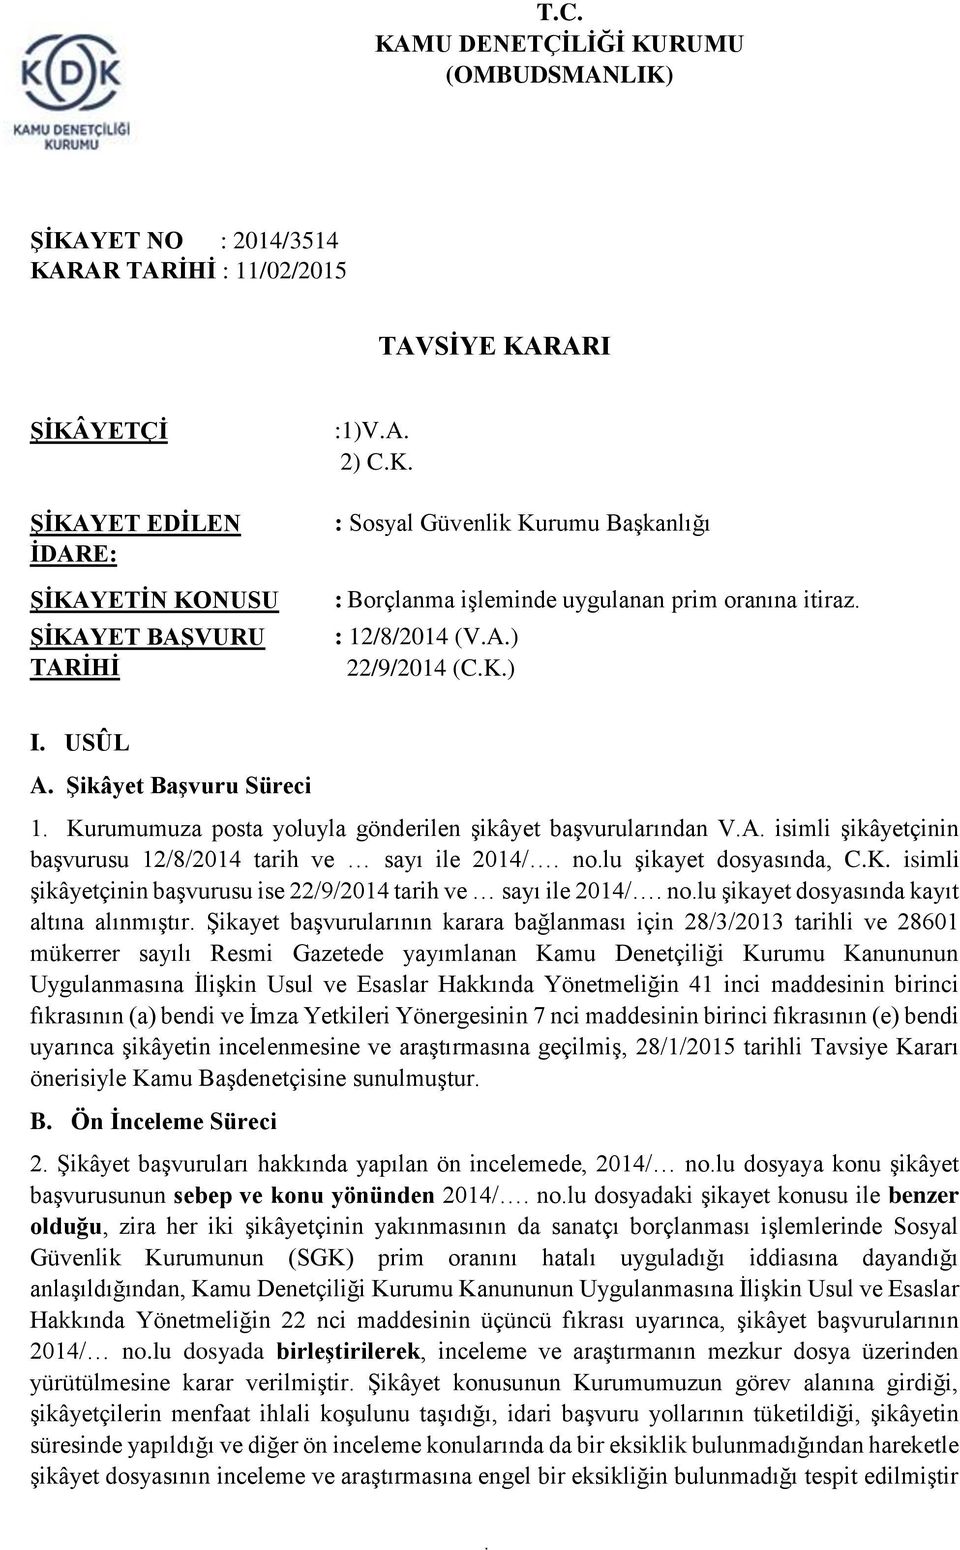 no.lu şikayet dosyasında, C.K. isimli şikâyetçinin başvurusu ise 22/9/2014 tarih ve sayı ile 2014/. no.lu şikayet dosyasında kayıt altına alınmıştır.